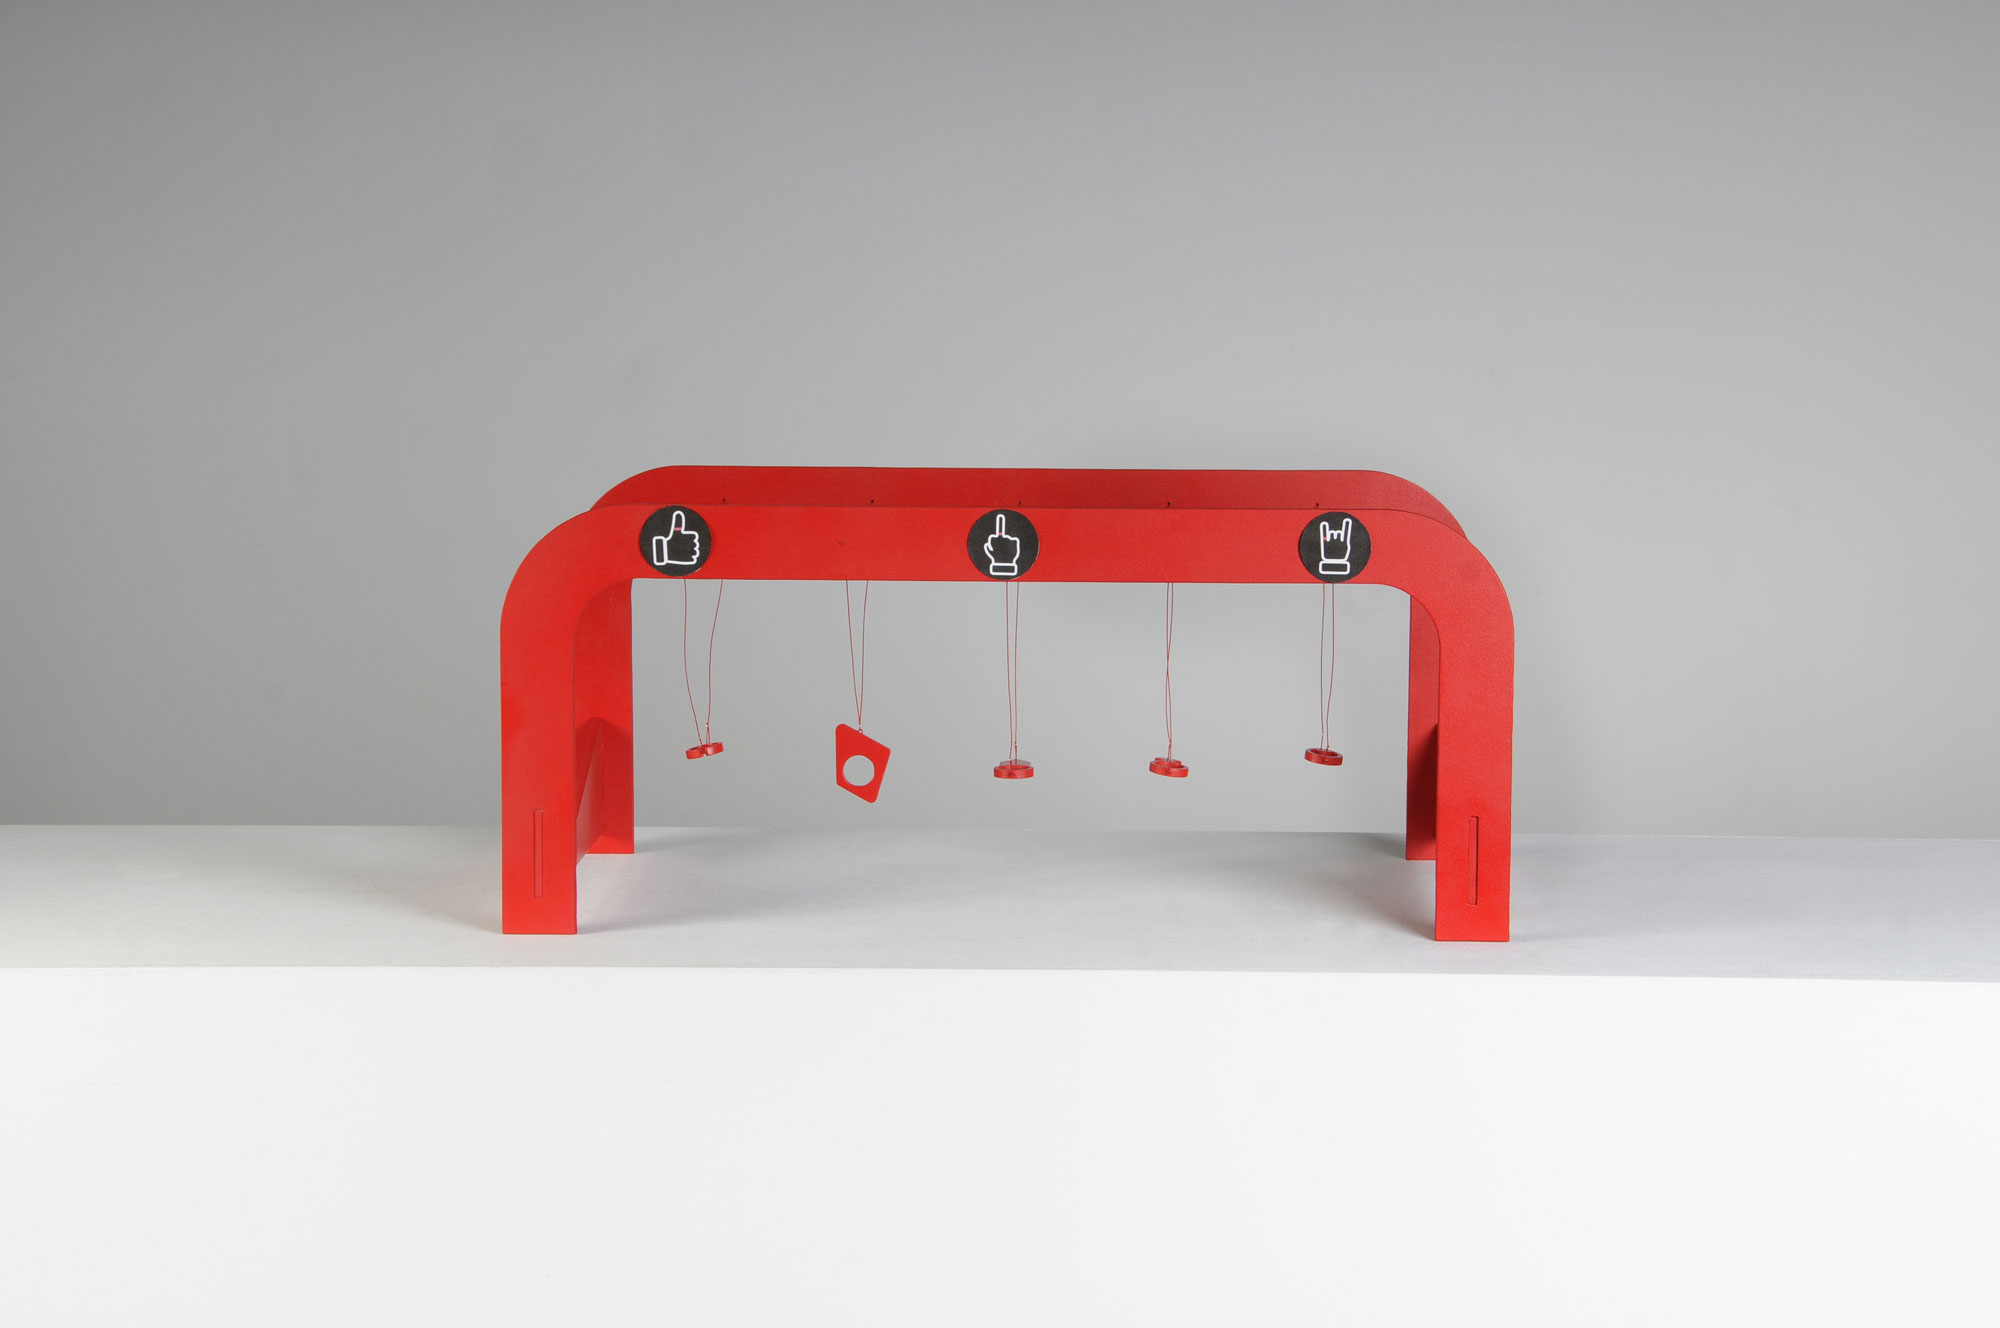 THE GAME de la collection OXYTOCIN (RED IS THE COLOR OF LOVE) en collaboration avec Alejandro Ruiz - bois, peinture, corde synthétique, petits anneaux de jonction, perles à écraser, autocollants, découpe sur bois - L.32 x l.29 x h.68 cm - 2020 - Photo : F. Kada